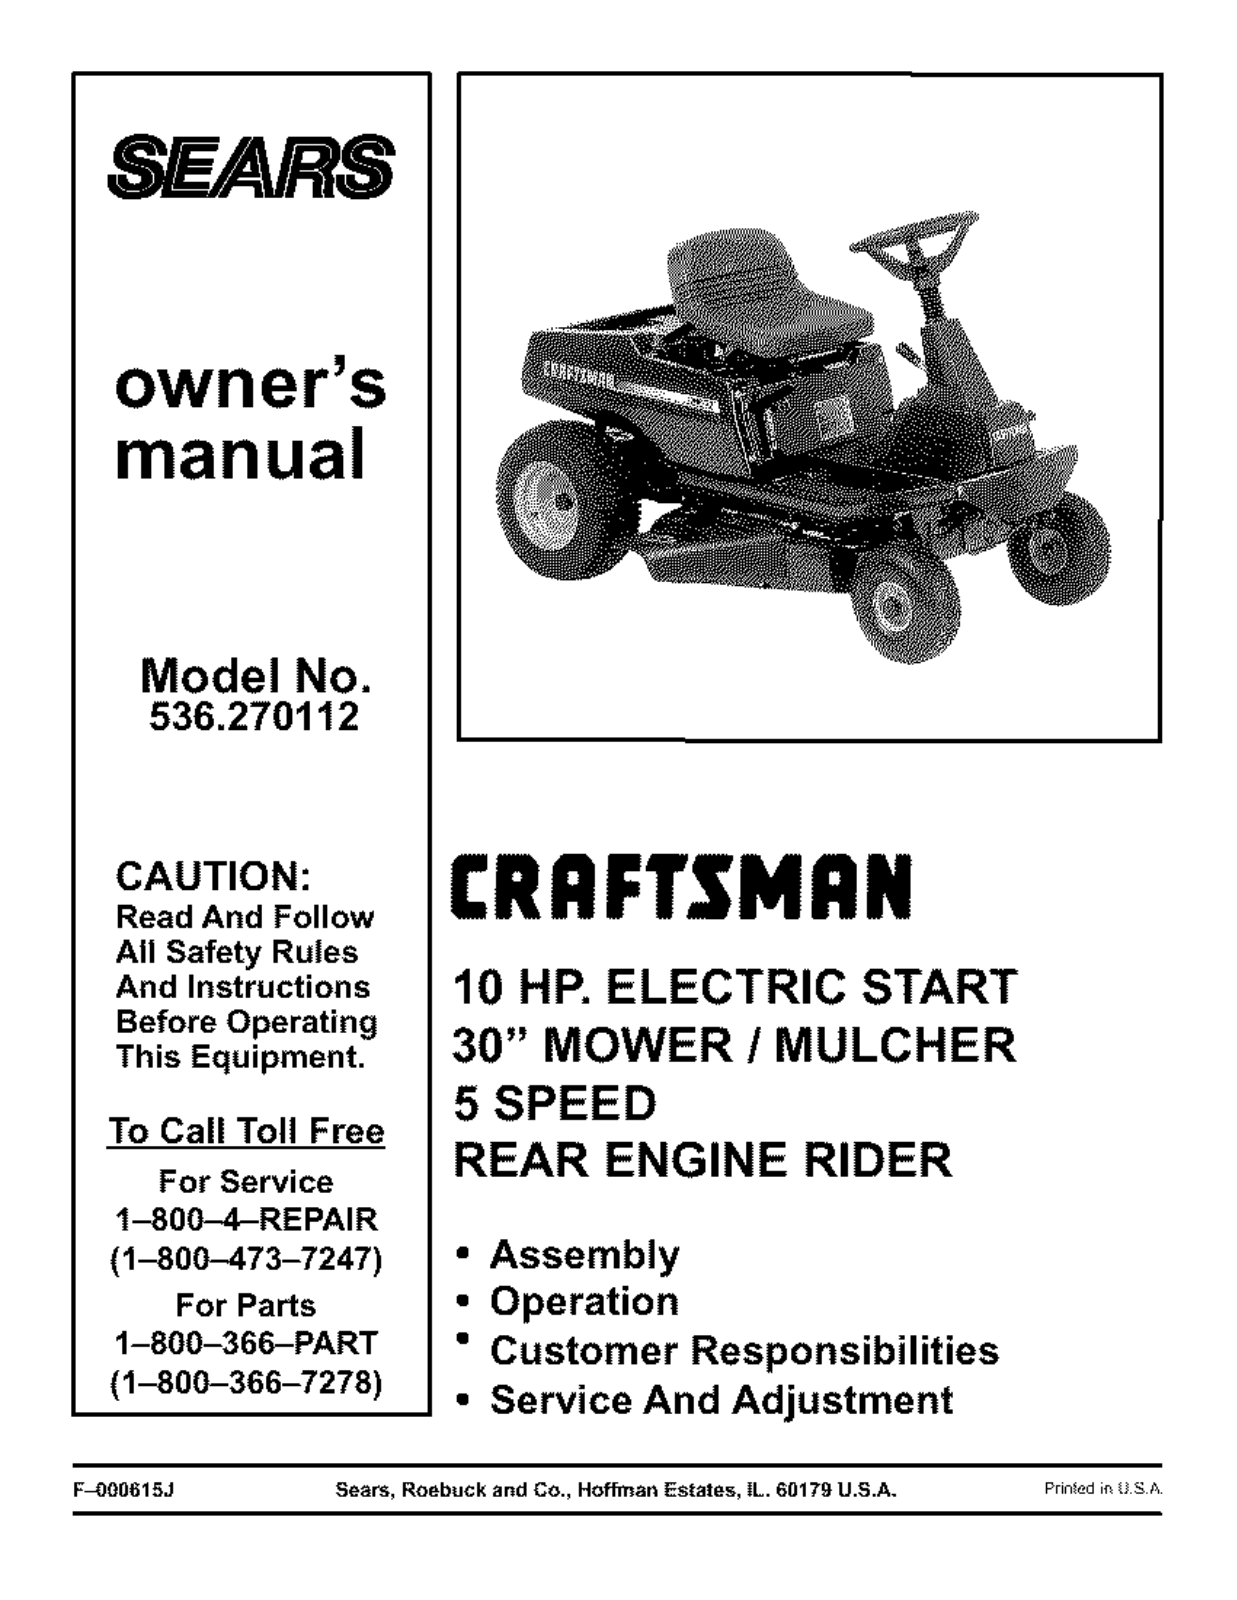 Craftsman 536.270112 User Manual